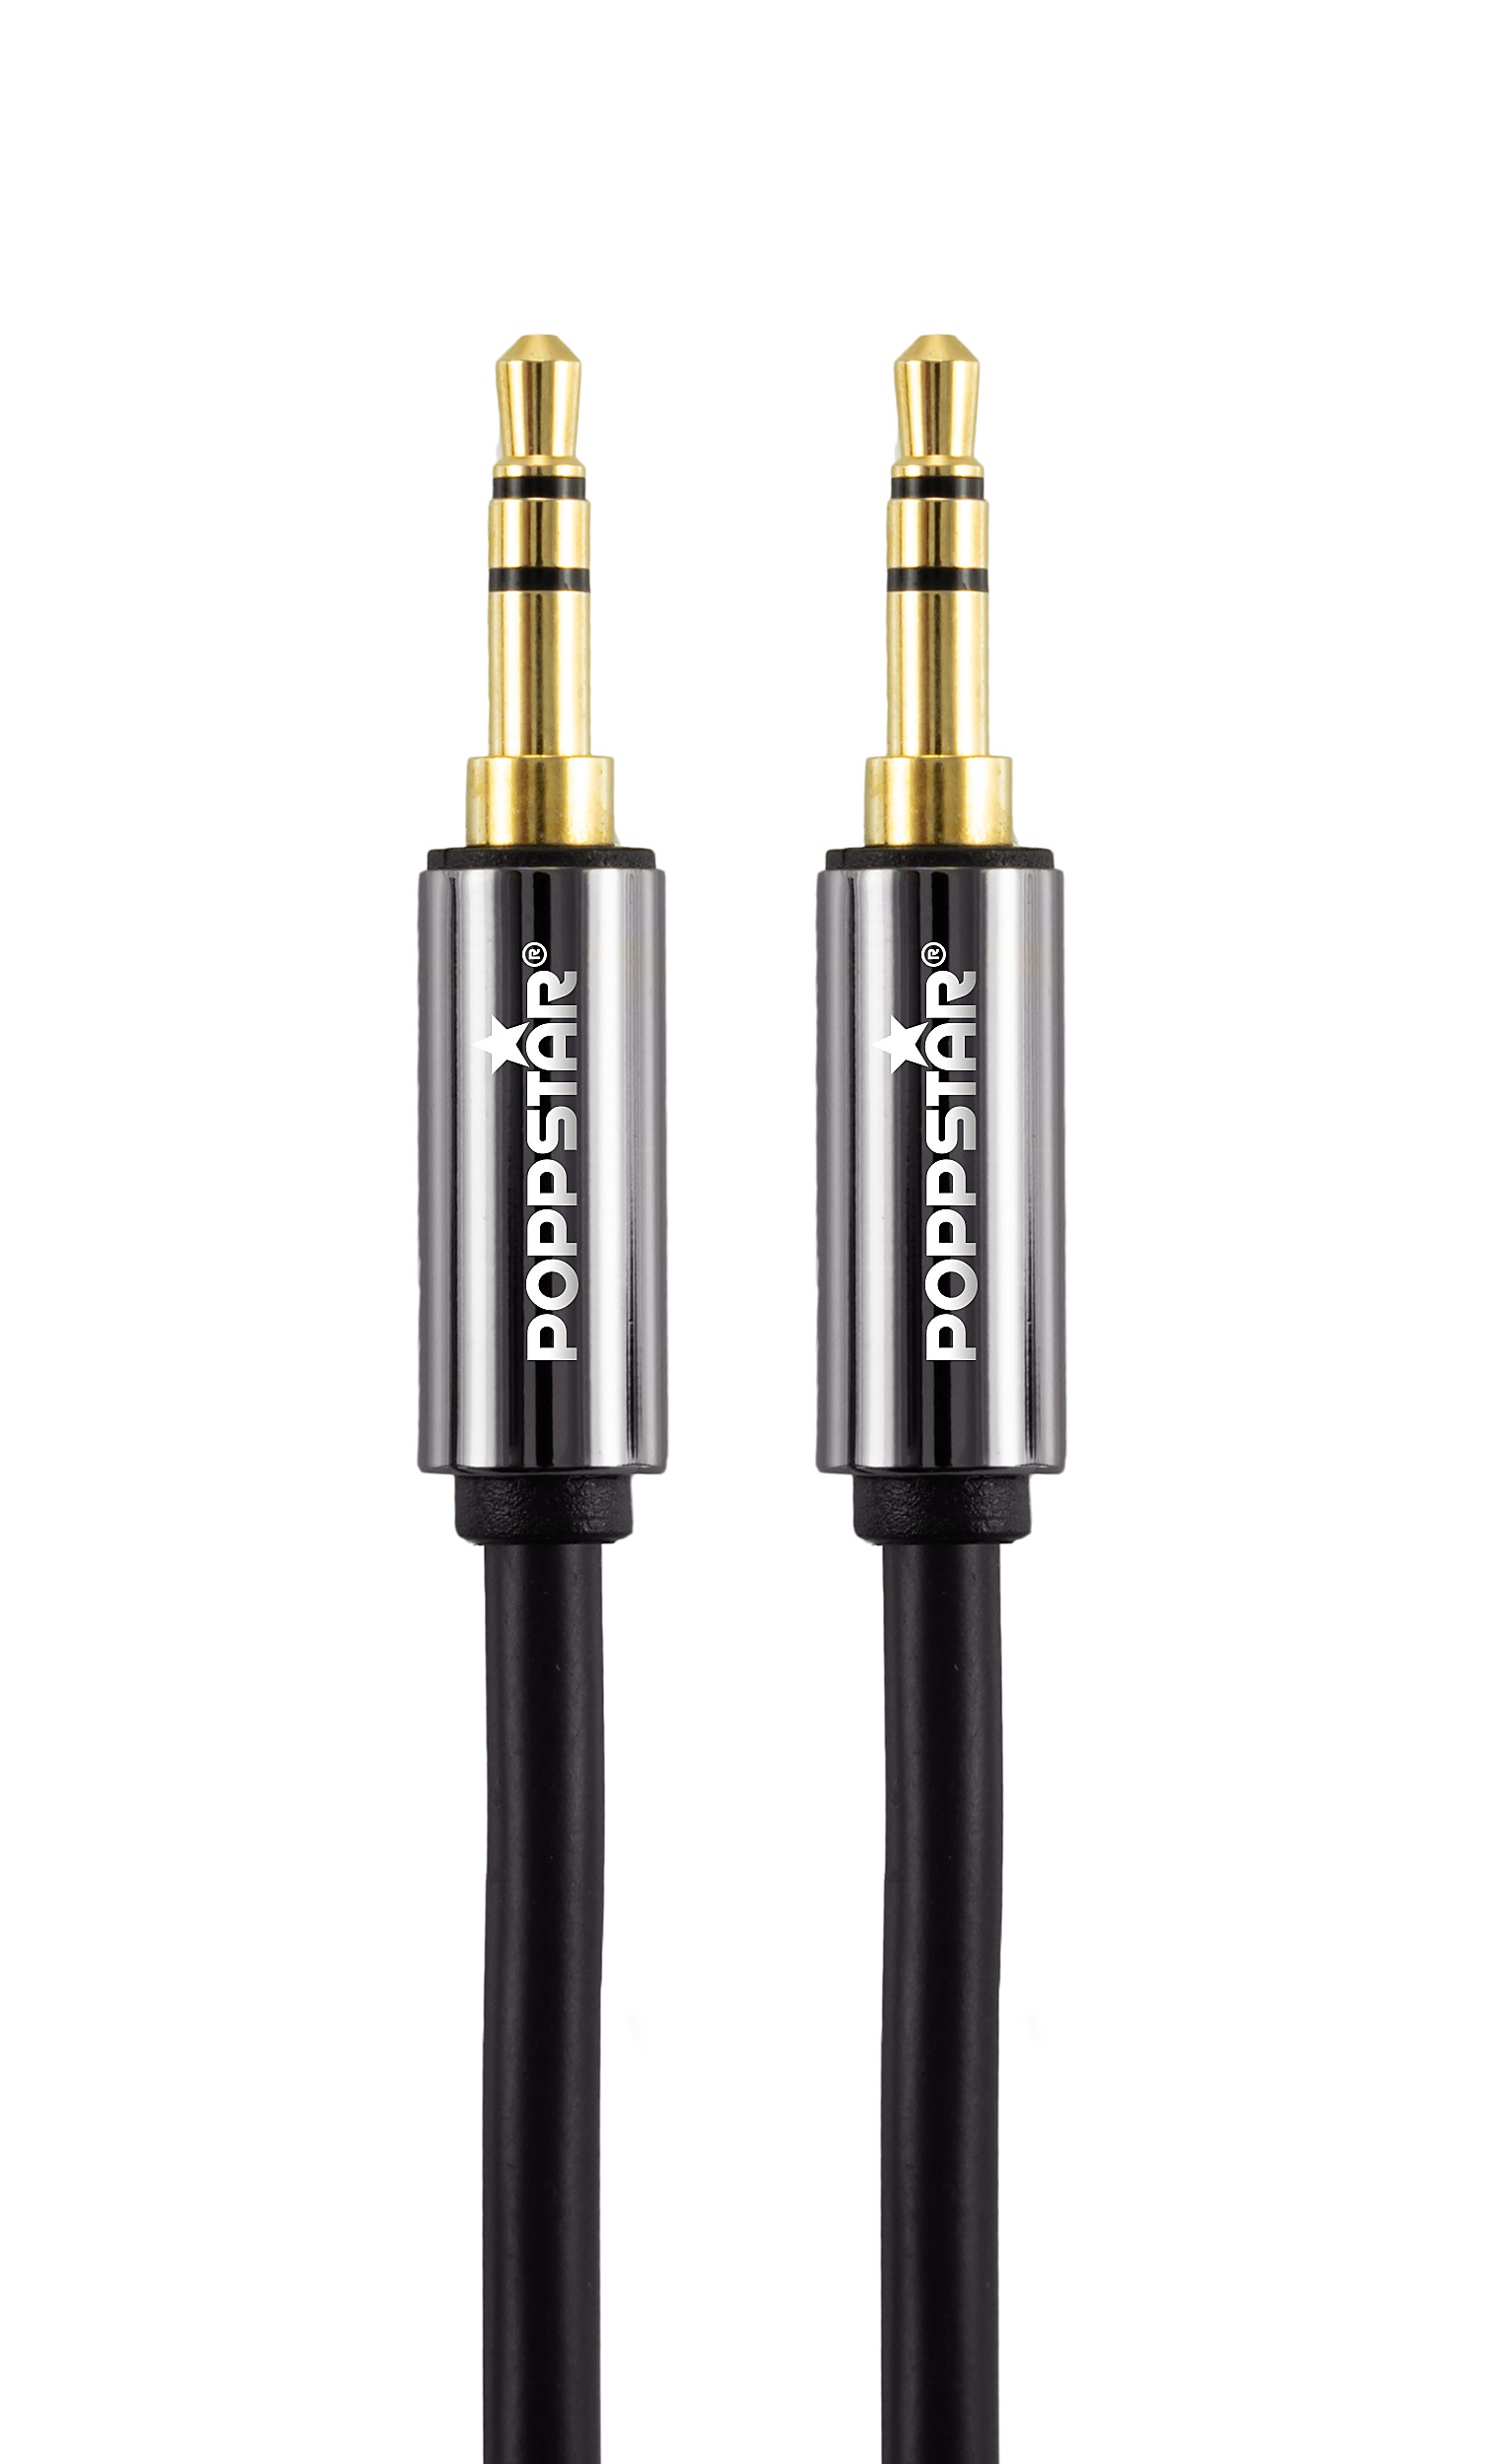 HQ Audio-Klinkenkabel 3 m mit Klinkenstecker 3,5 mm vergoldet